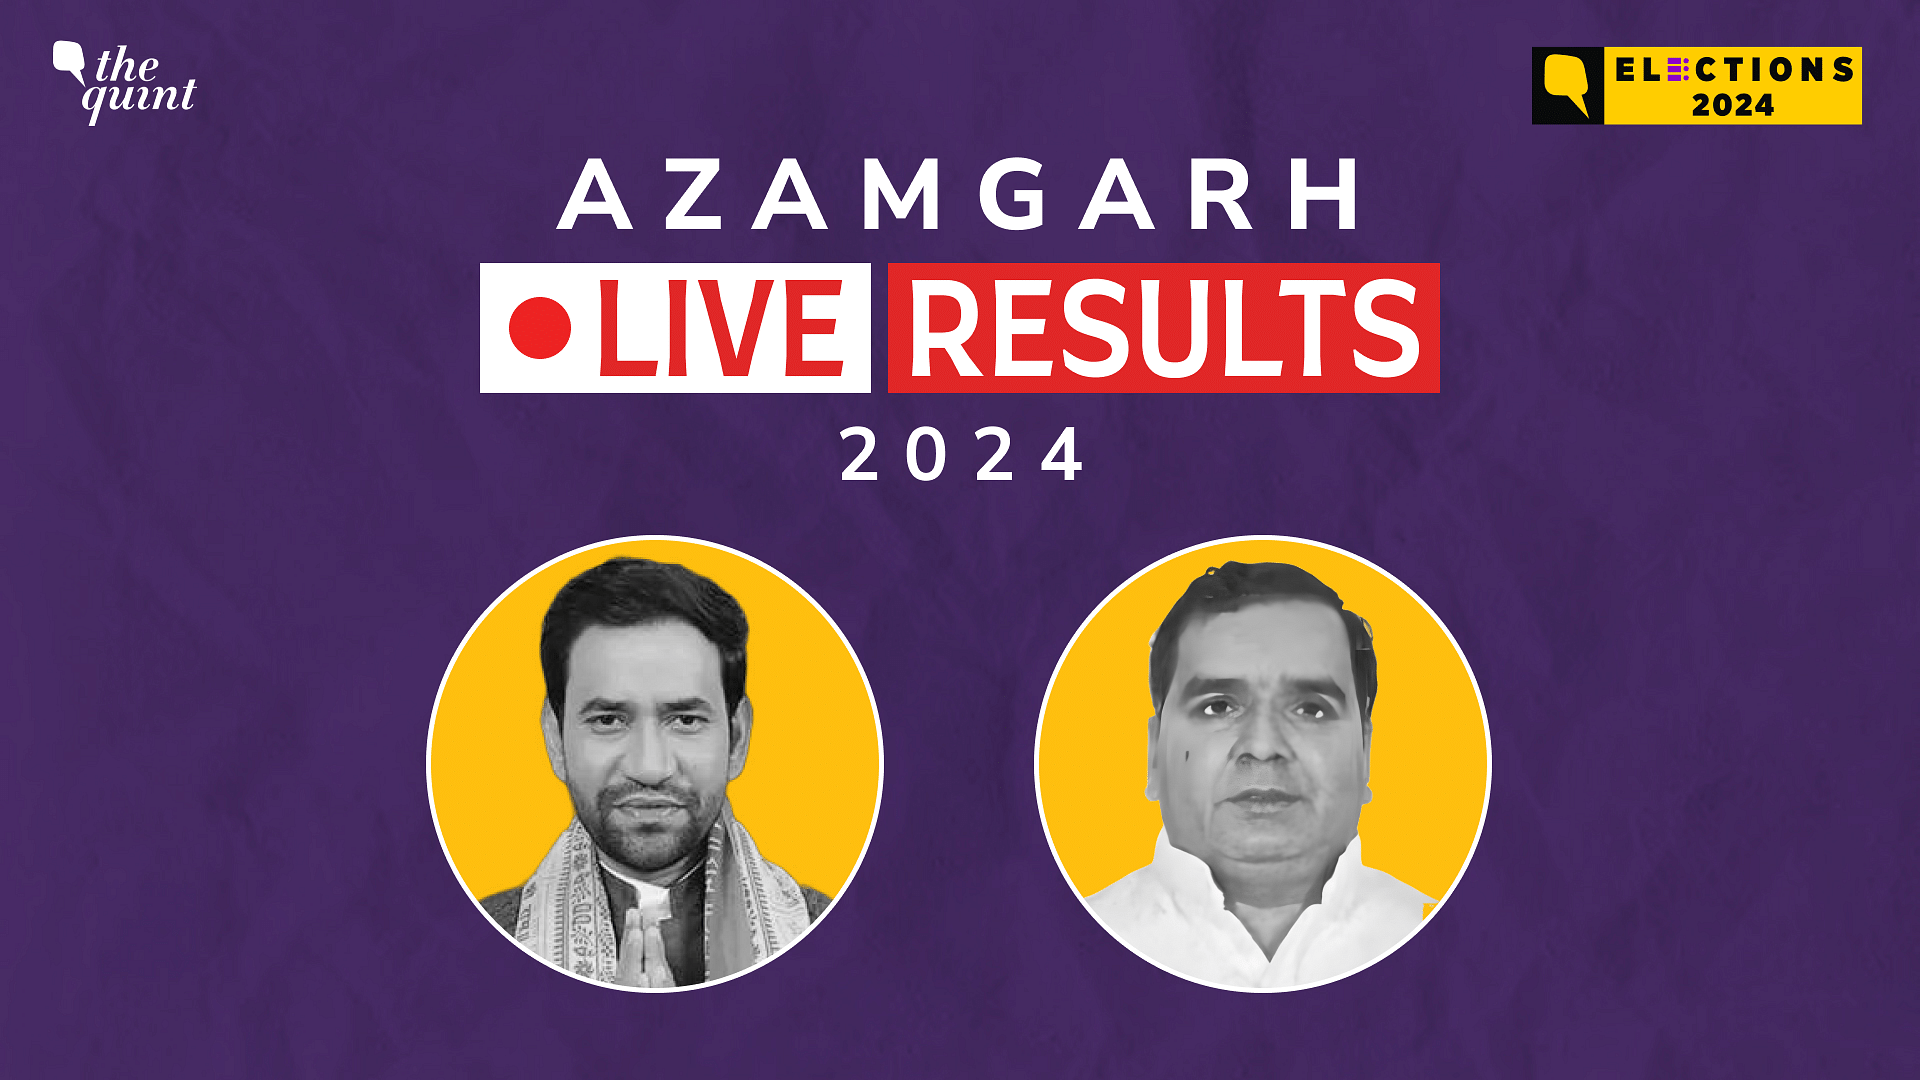 <div class="paragraphs"><p>Azamgarh Election Result live updates for Lok Sabha election 2024</p></div>